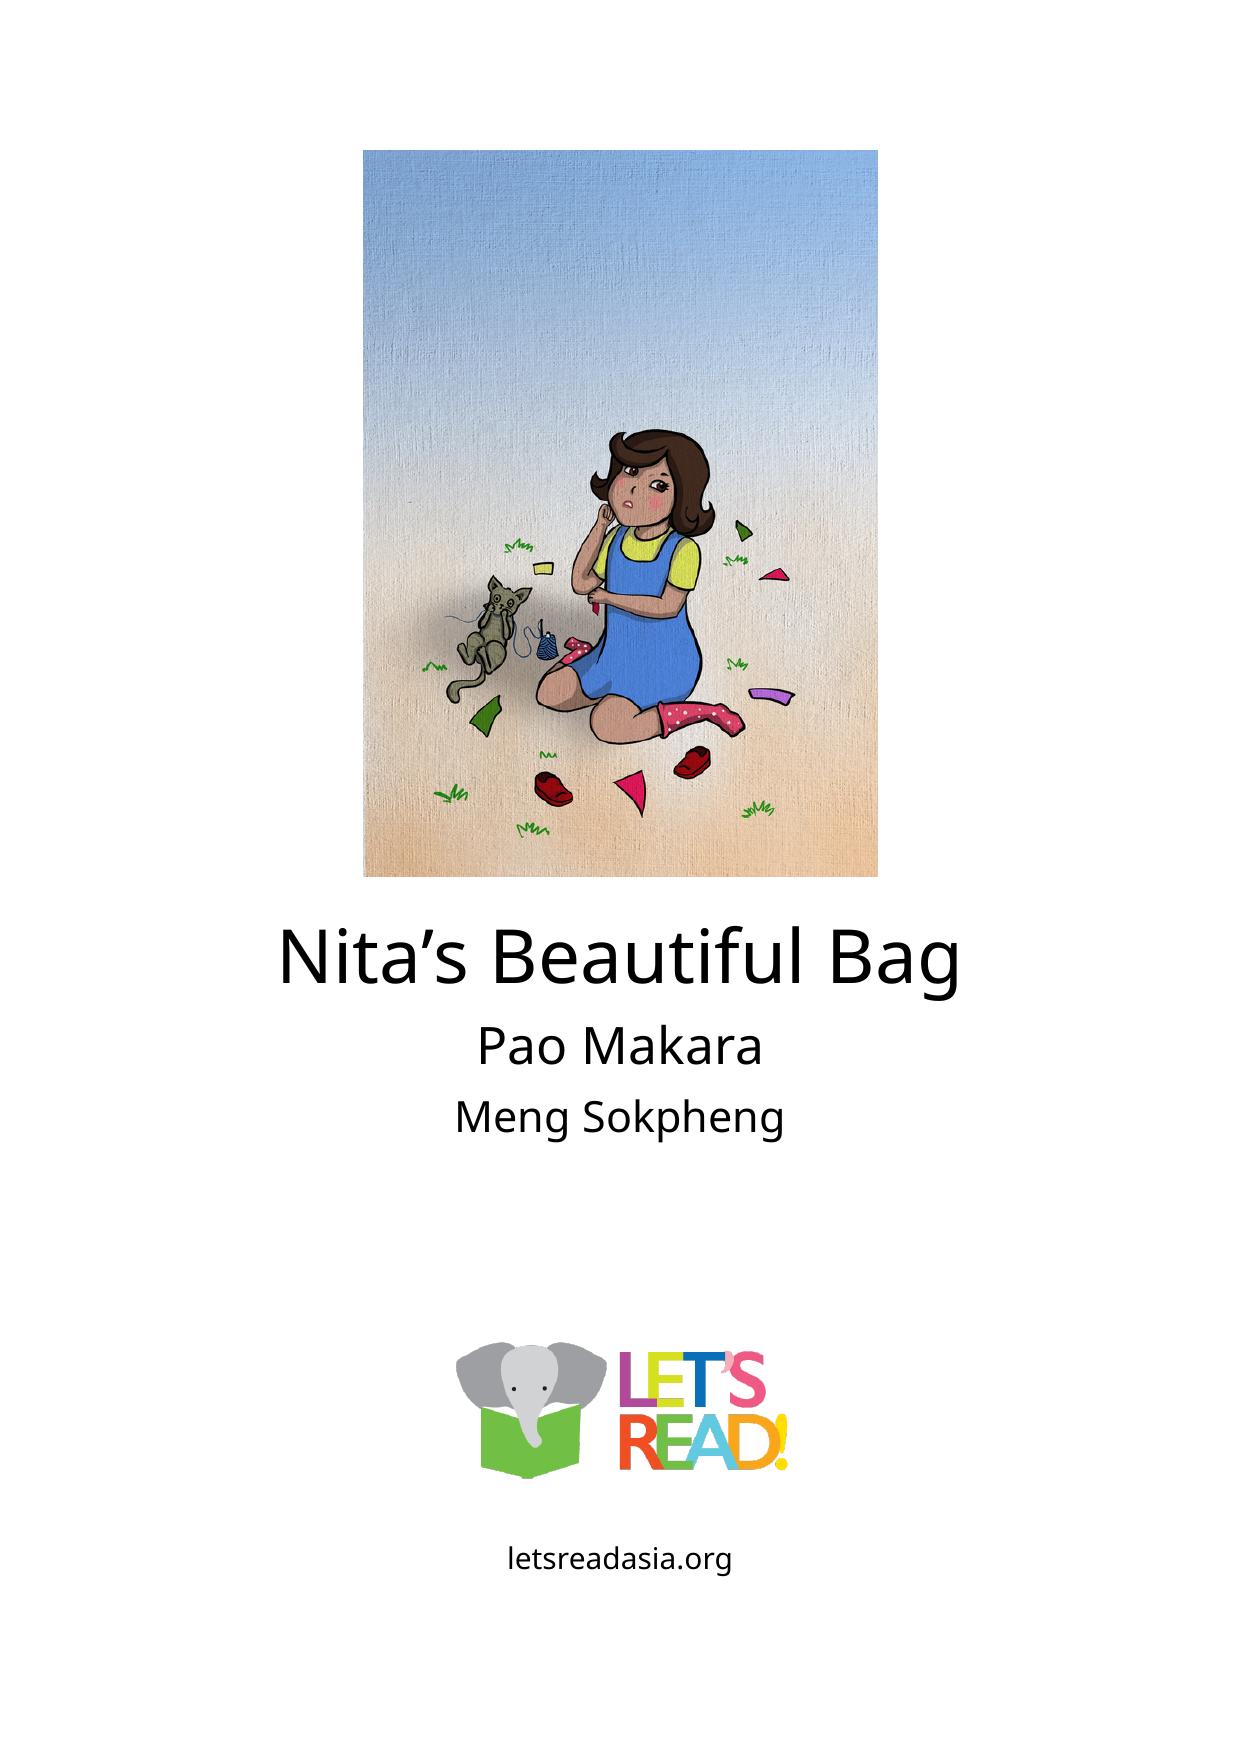 Nita’s Beautiful Bag